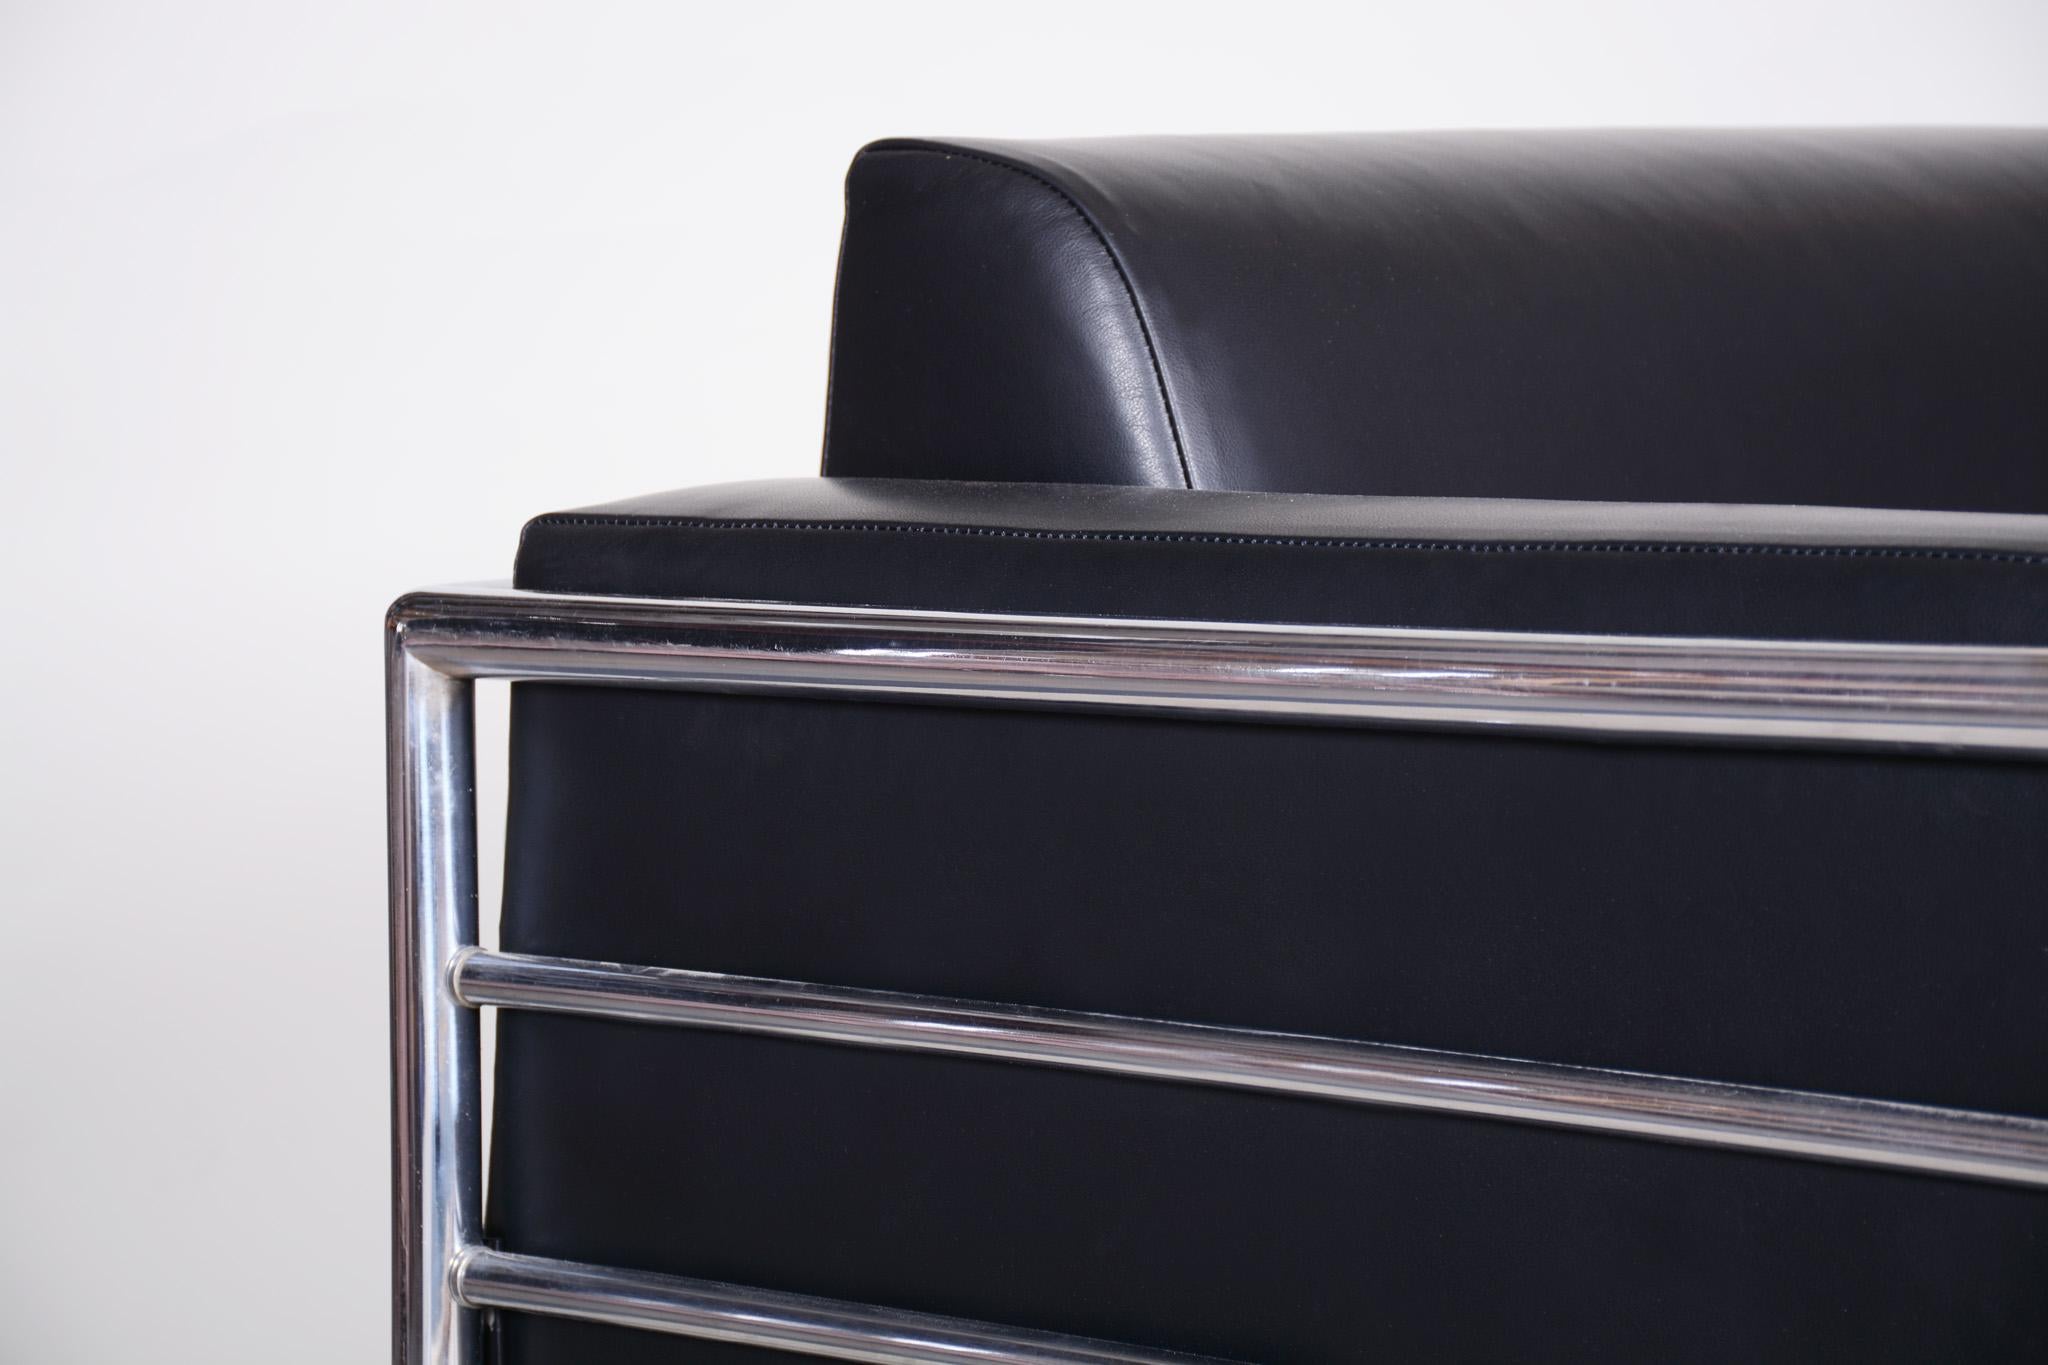 Sofa im Bauhaus-Stil mit verchromtem Stahlrohrgestell.
Hergestellt von Vichr a Spol in den 1930er Jahren.
Das verchromte Stahlrohr ist in perfektem Originalzustand.
Gepolstert mit hochwertigem Leder
Quelle: Tschechische Republik